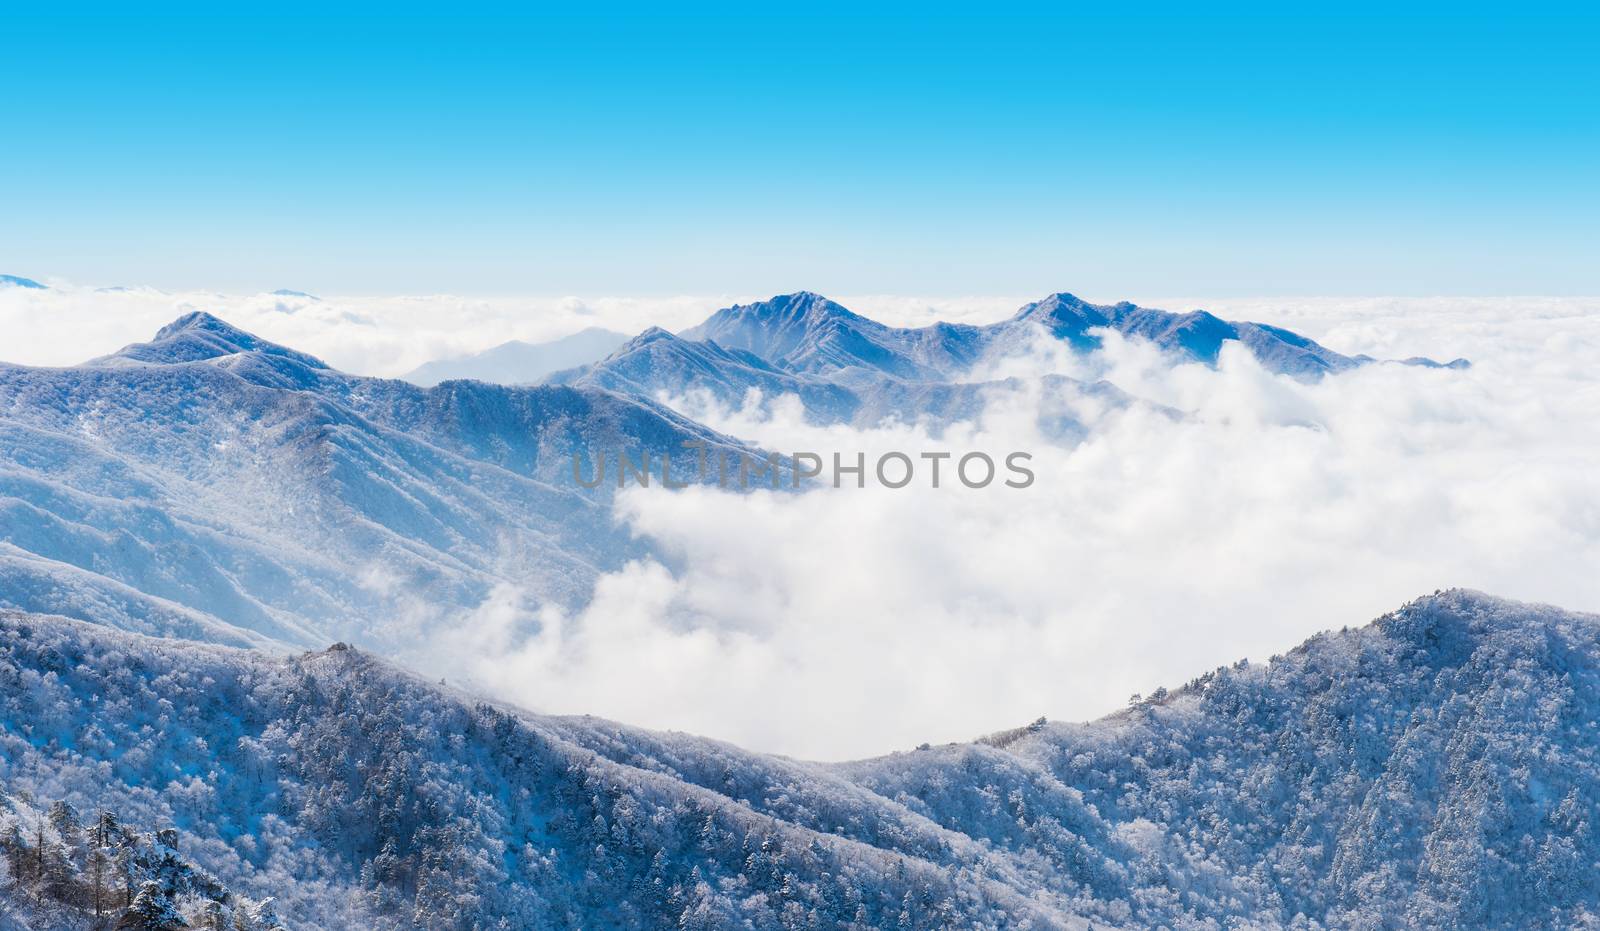 Landscape in winter,Deogyusan in korea